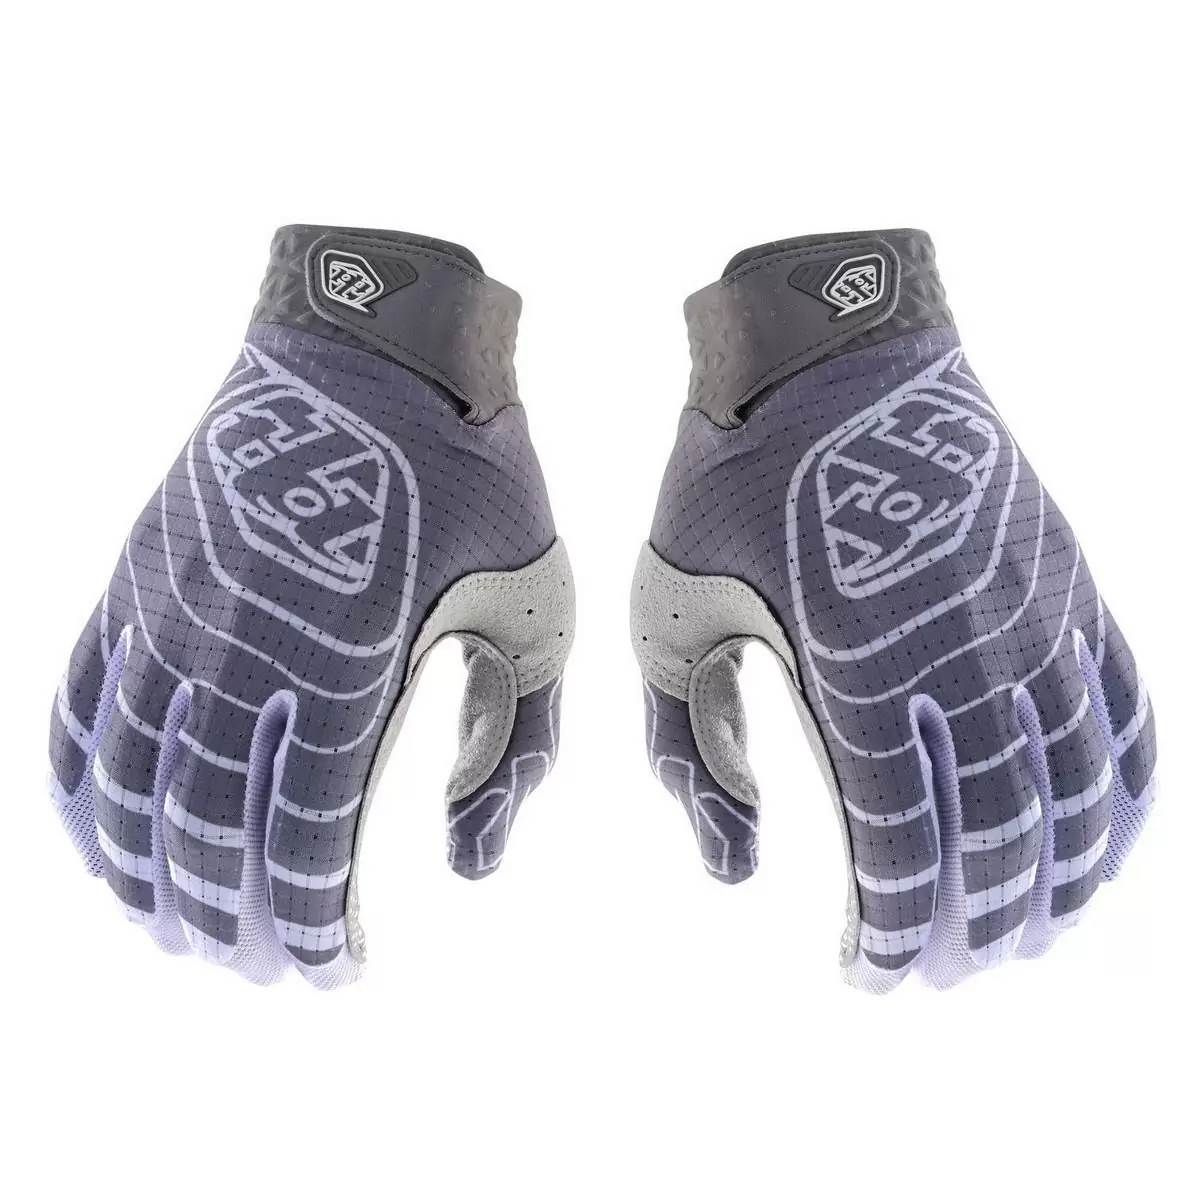 MTB Gloves Air Glove Richter White/Grey Size S - image